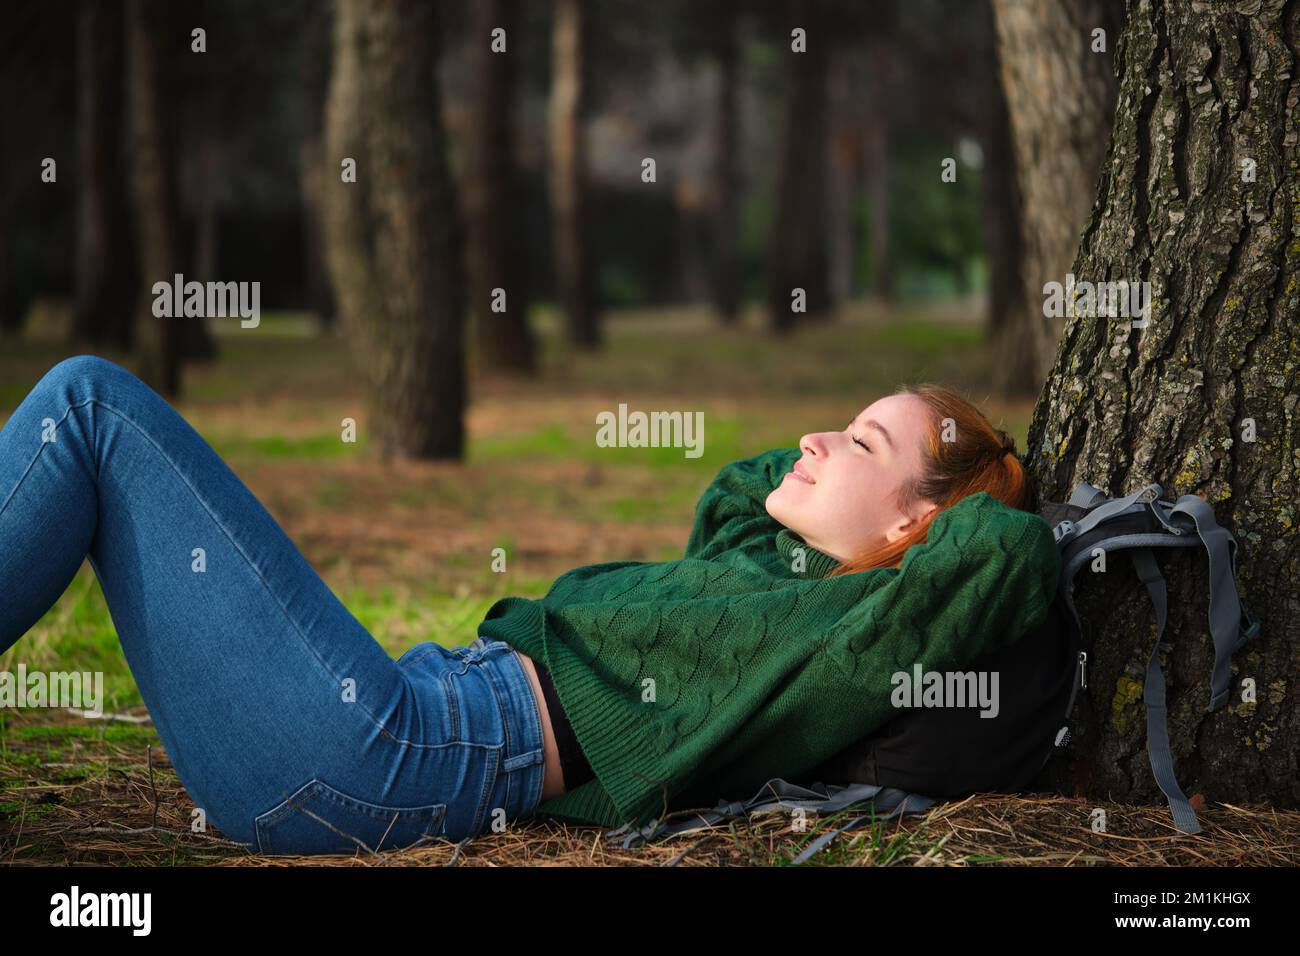 Rothaarige junge Frau, die im Wald unter einem Baum lag. Stockfoto